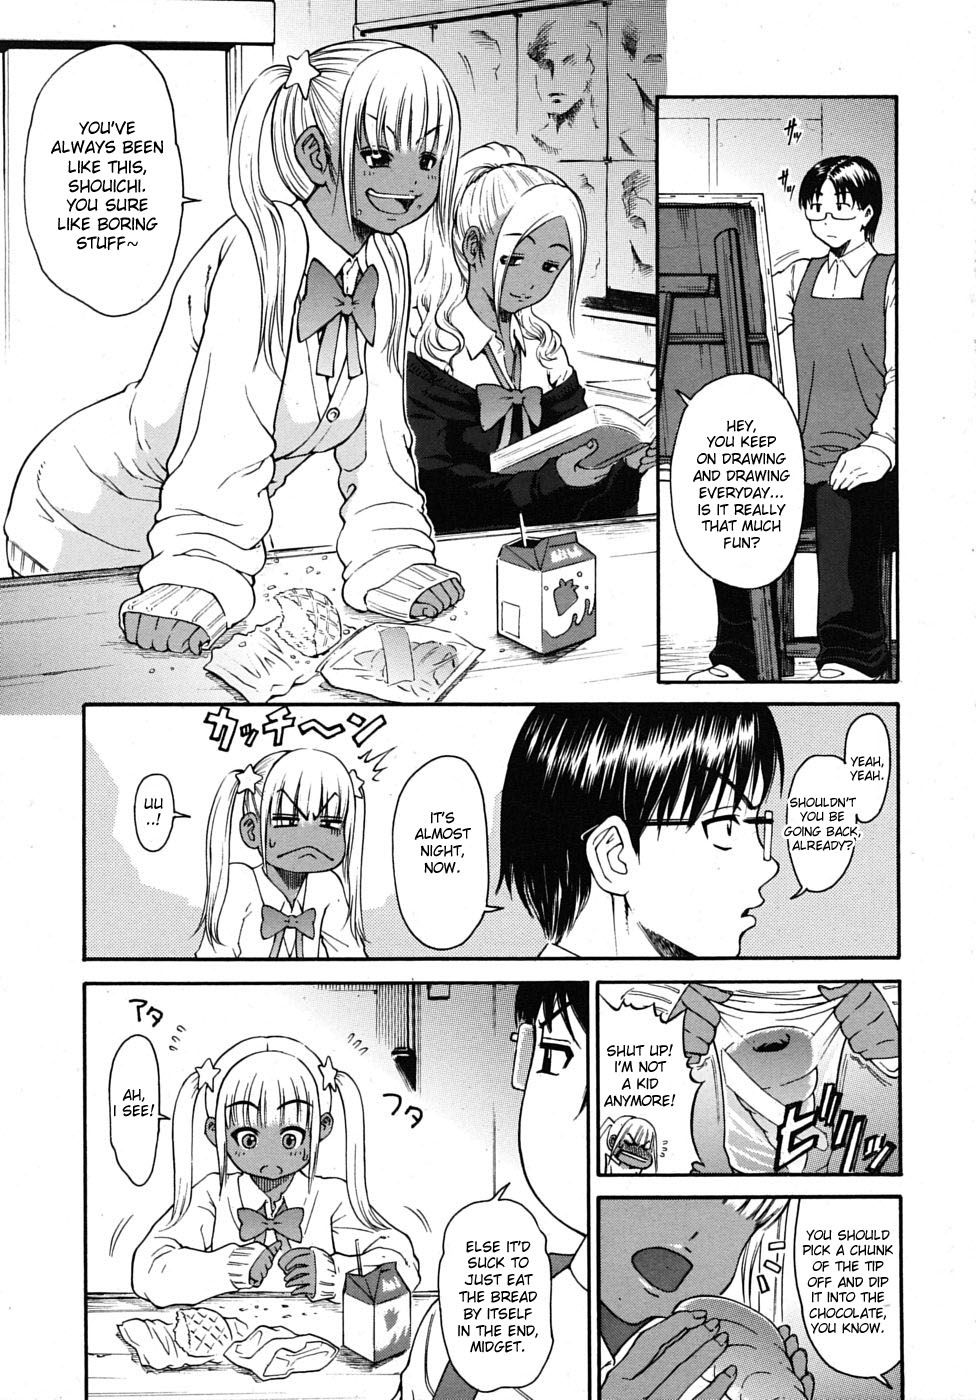 Hentai Manga Comic-Don't Call Me a midget !-Read-1